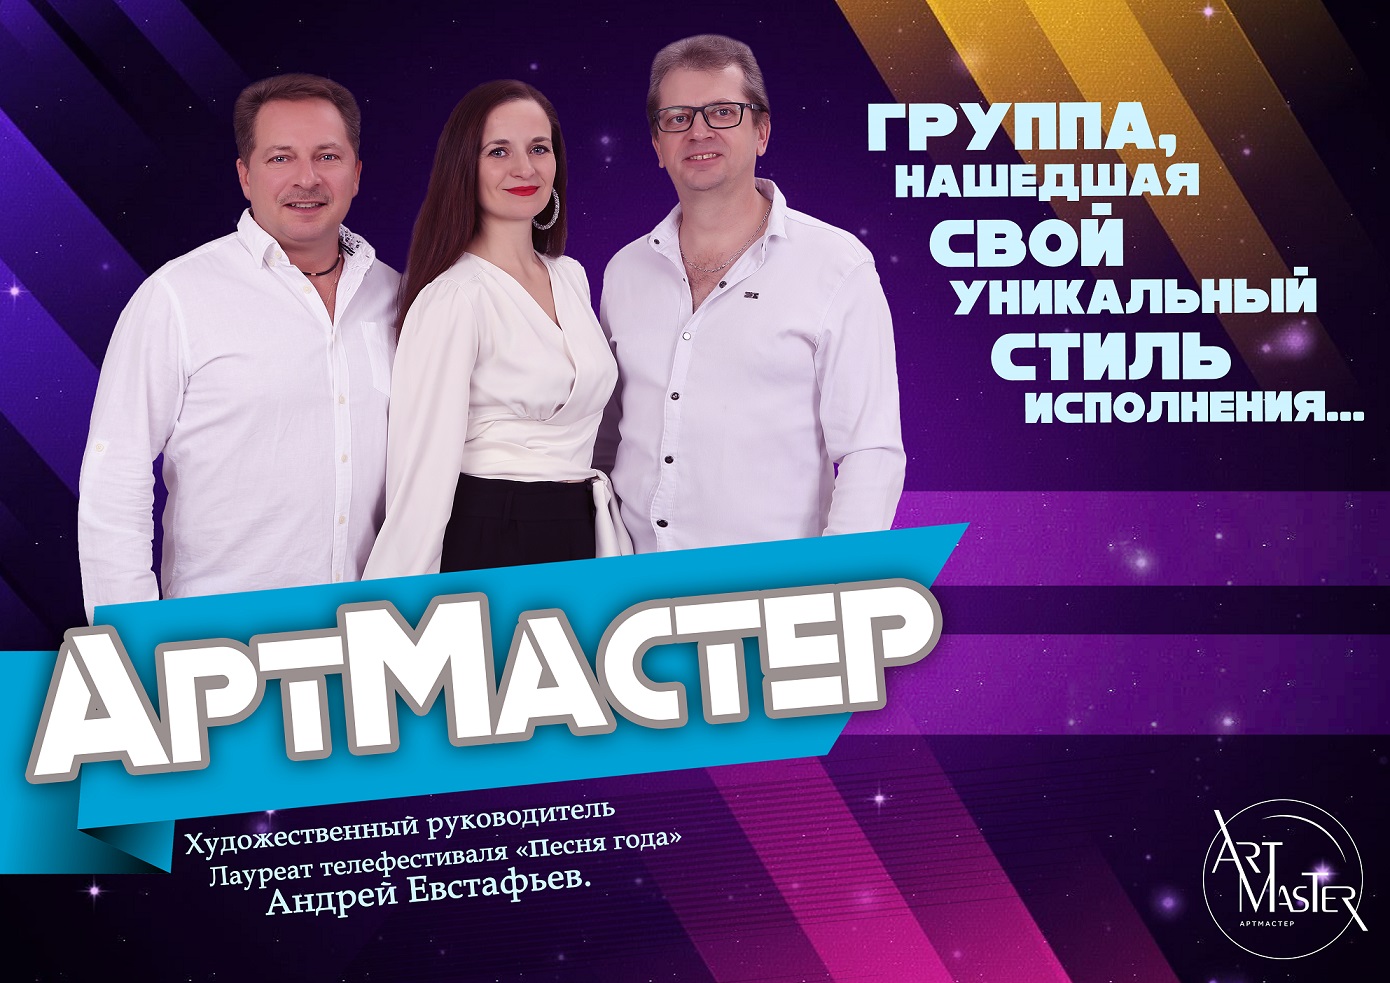 Вокальный ансамбль эстрадной песни "АртМастер"